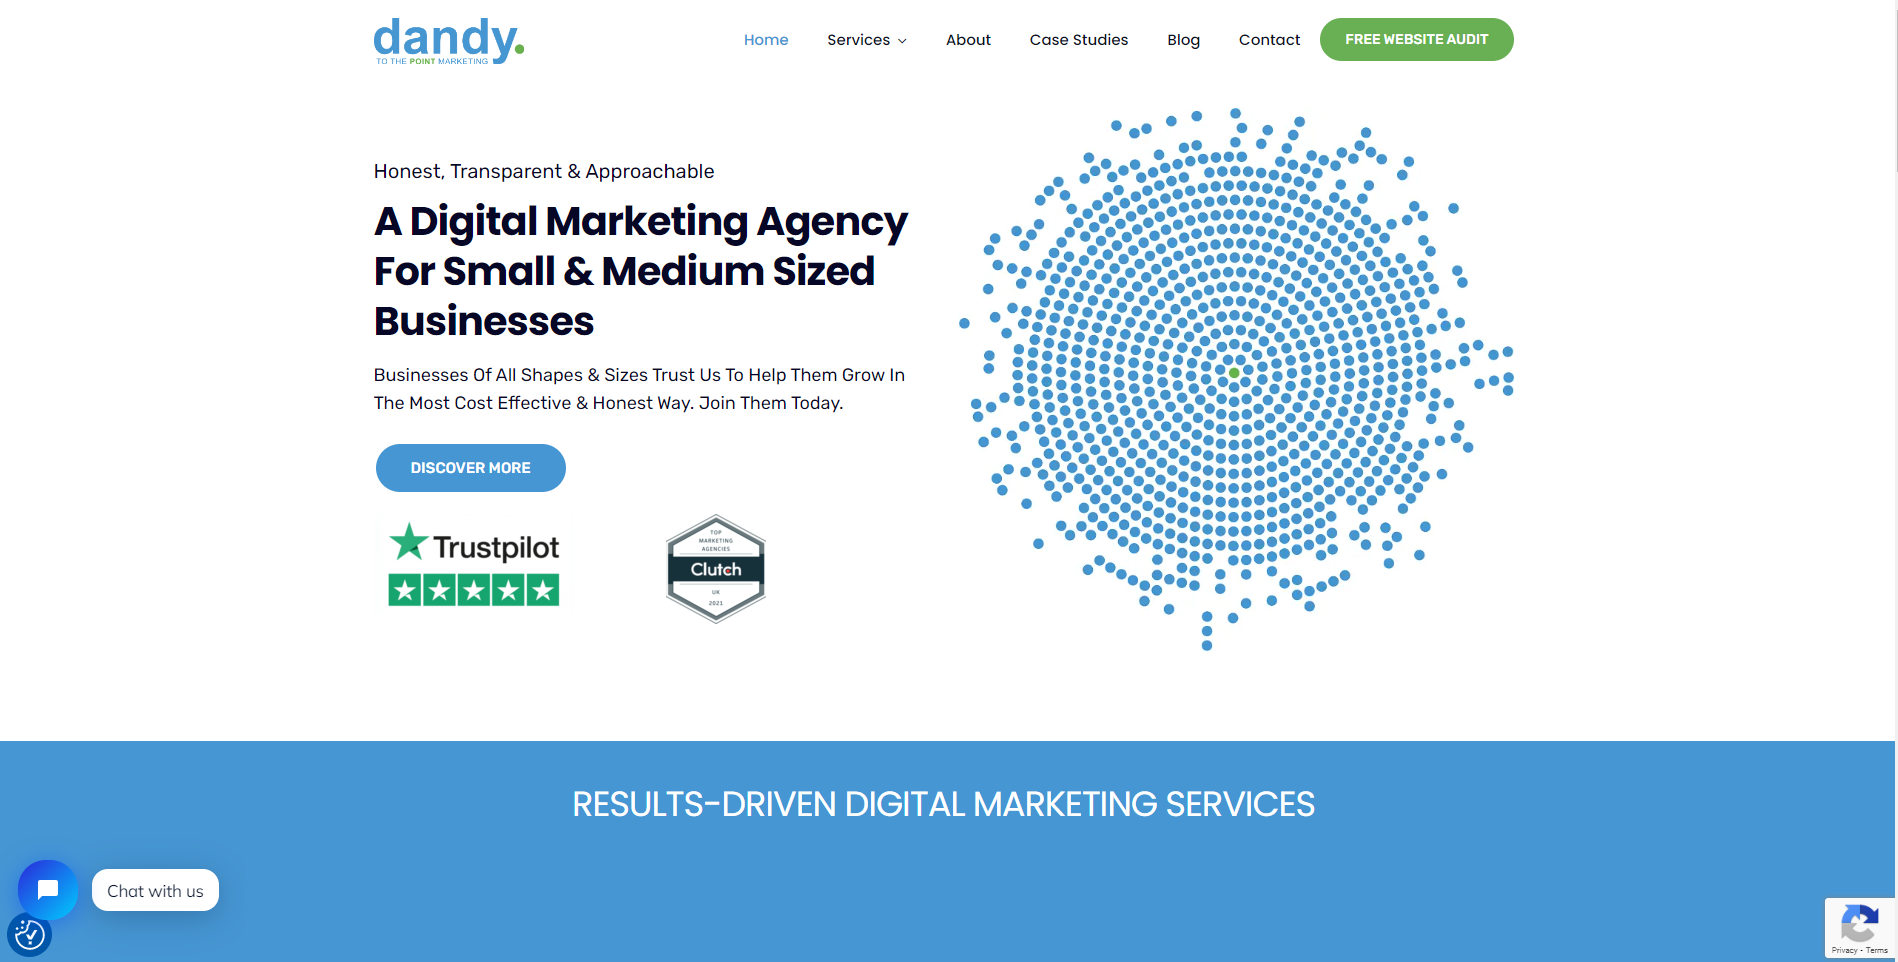 Dandy Digital Marketing Agency